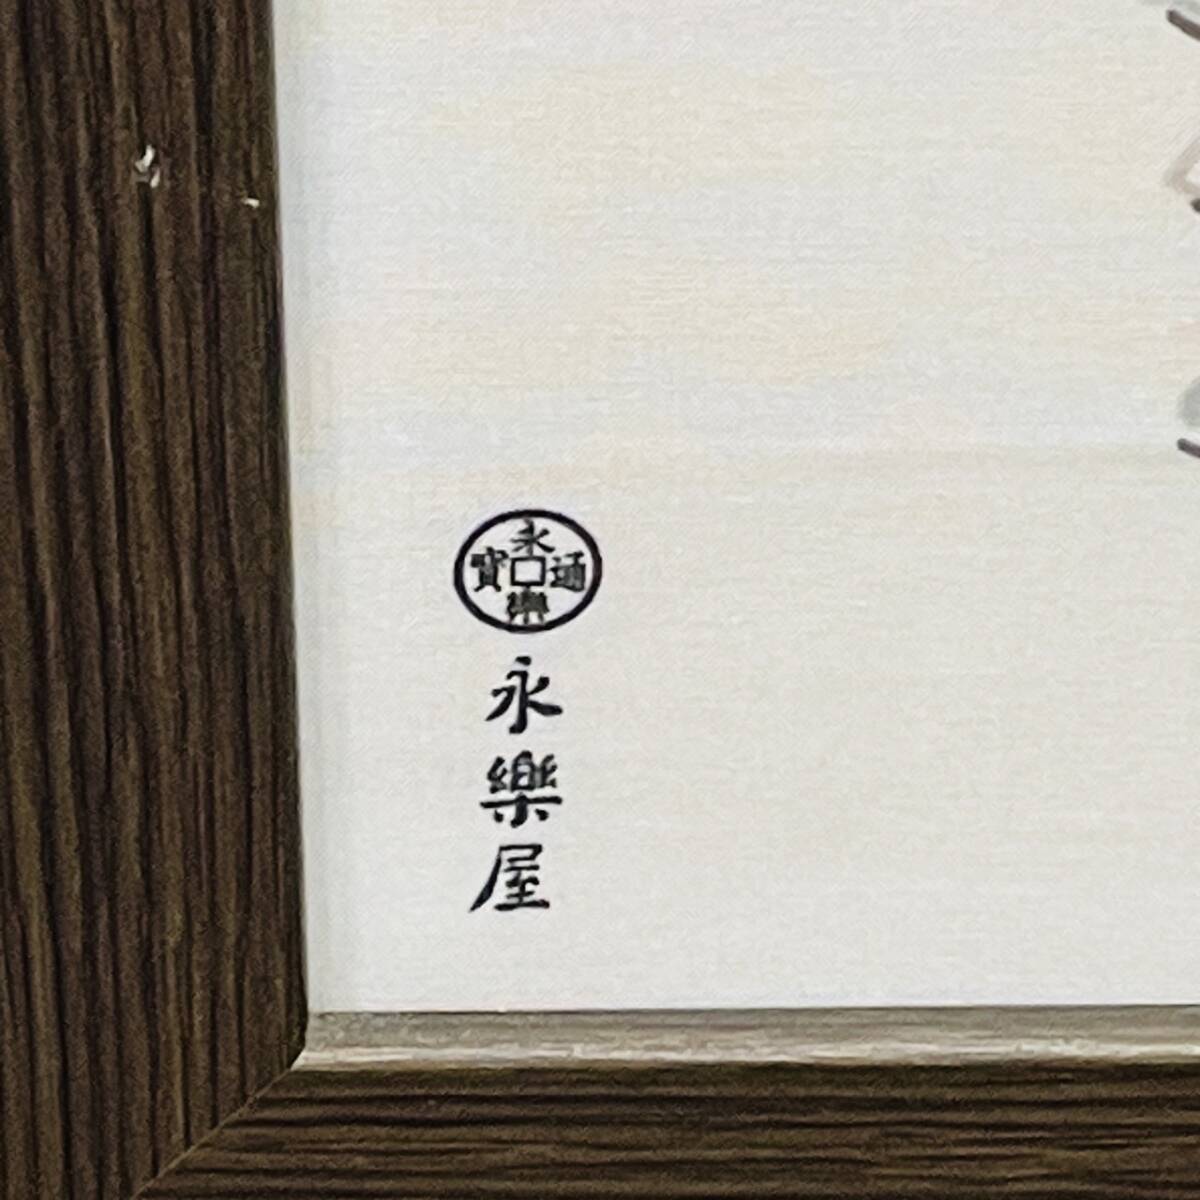 [H11533OR] 1 иен ~ Eiraku магазин рука ... рама ввод 3 позиций комплект рама размер длина примерный 96c=m ширина примерный 41cm интерьер Kyoto мир рисунок искусство изобразительное искусство 